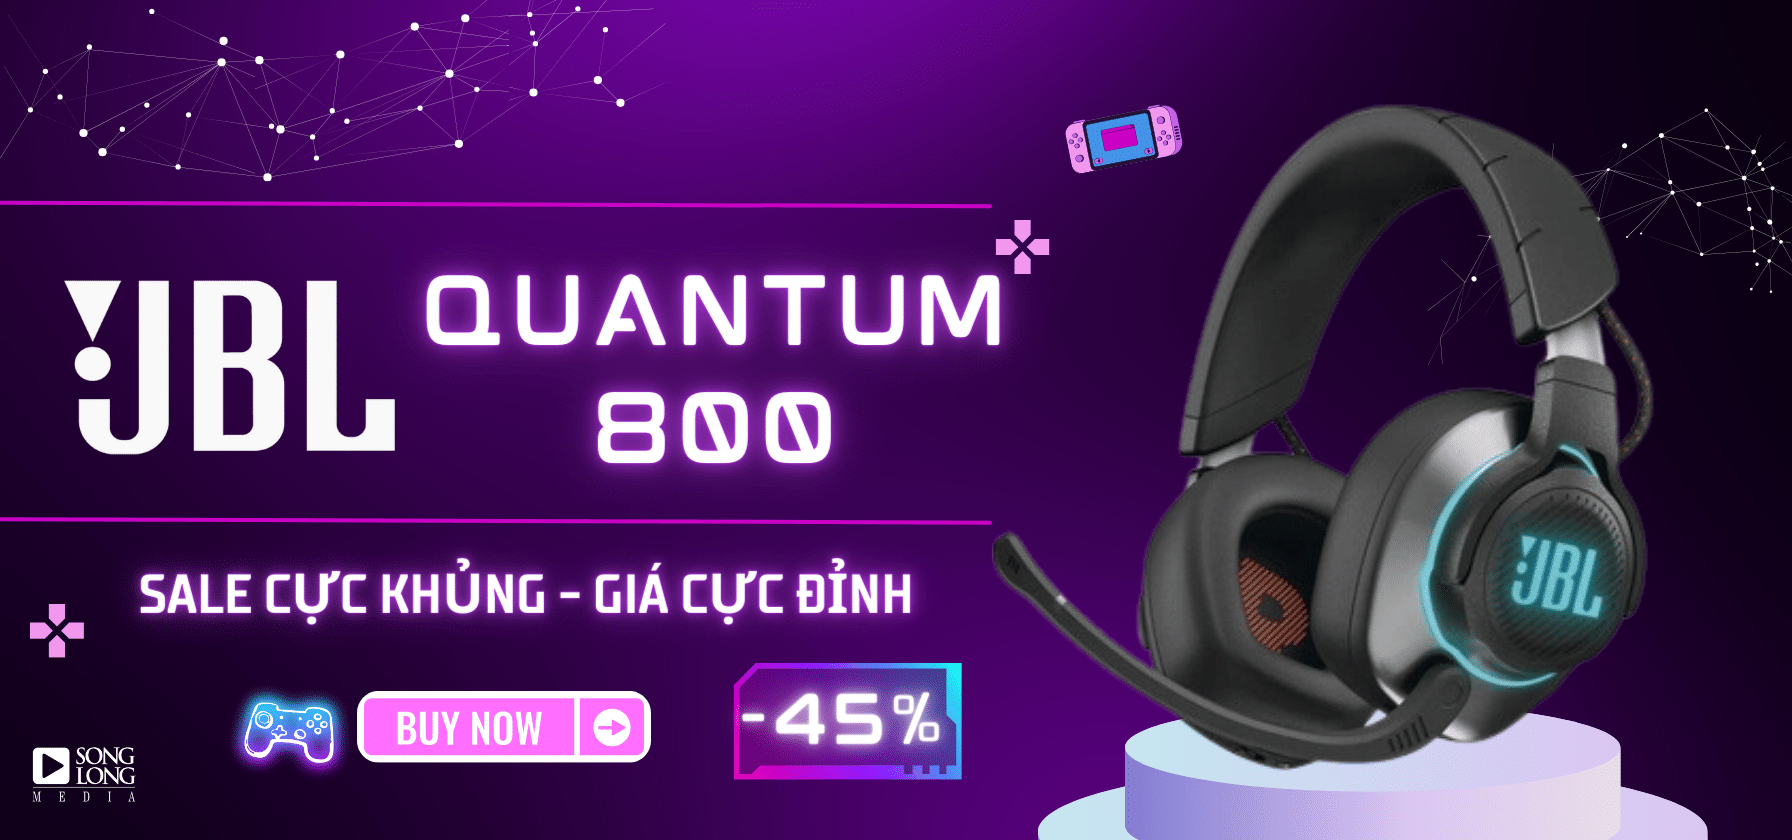 banner JBL quantum 800 super sale